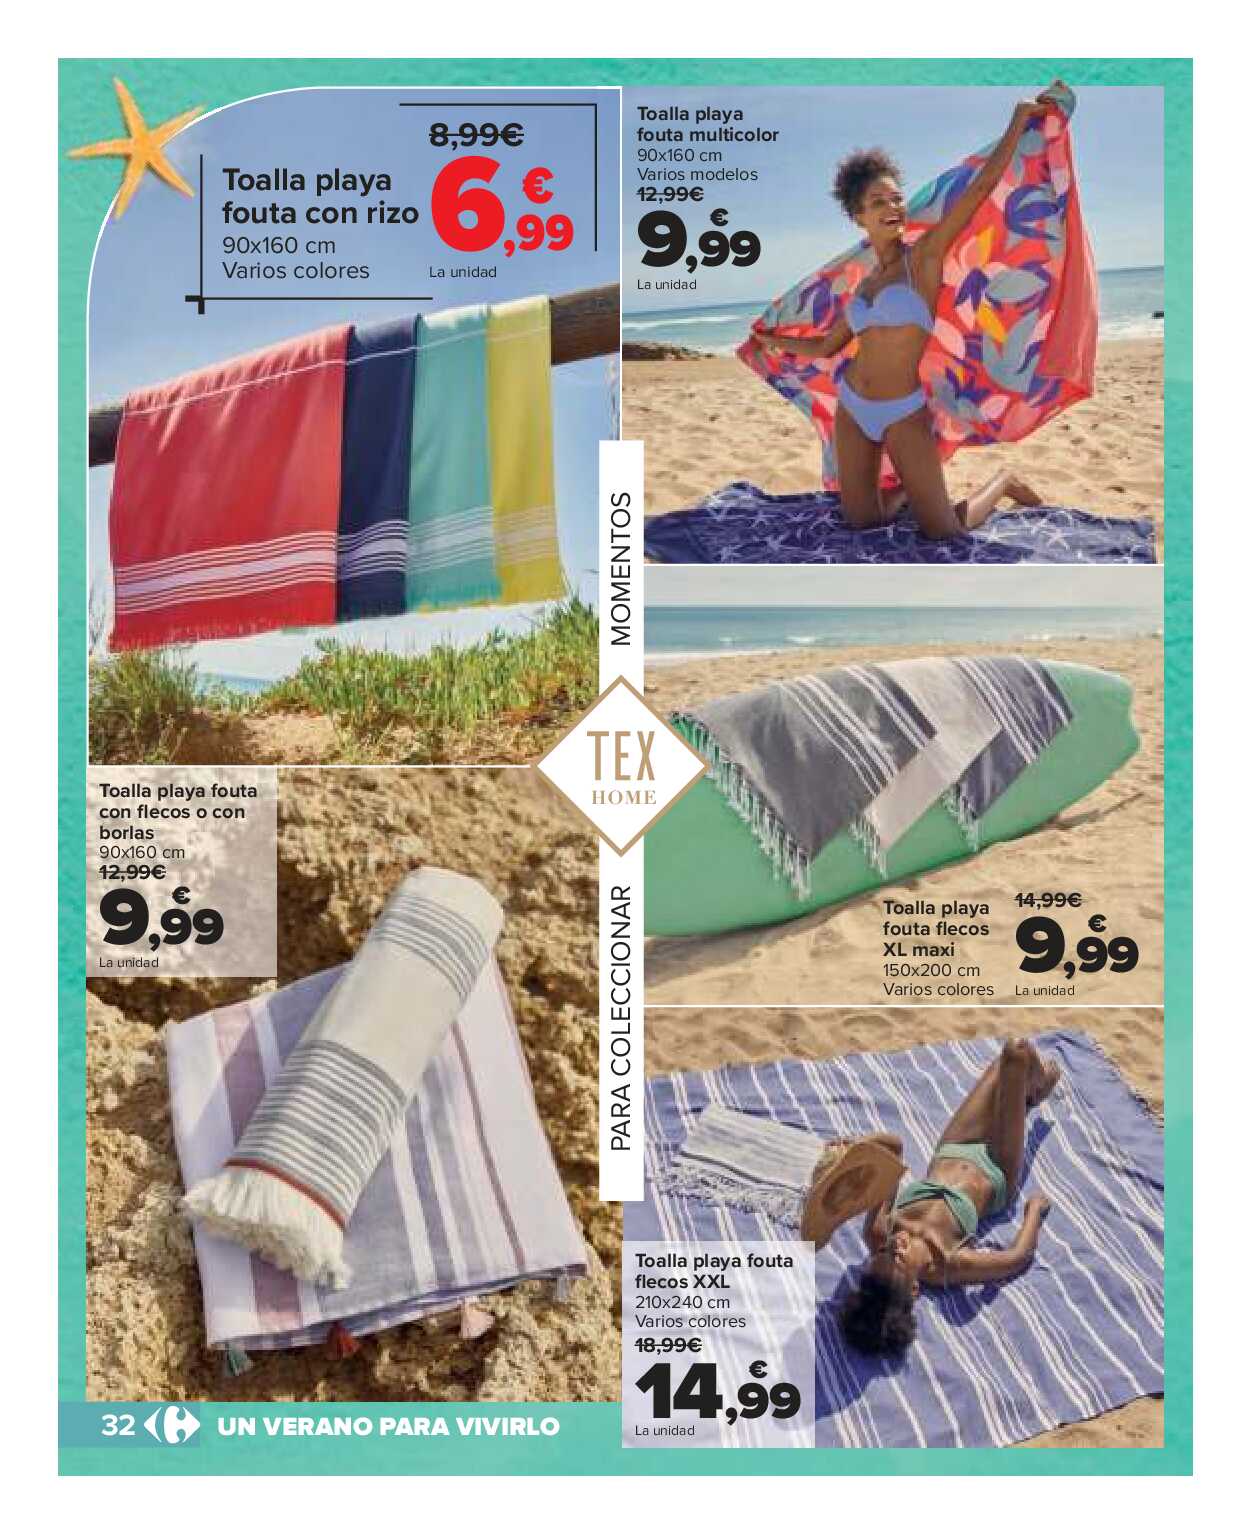 Catálogo de baño: un verano para vivirlo Carrefour. Página 32